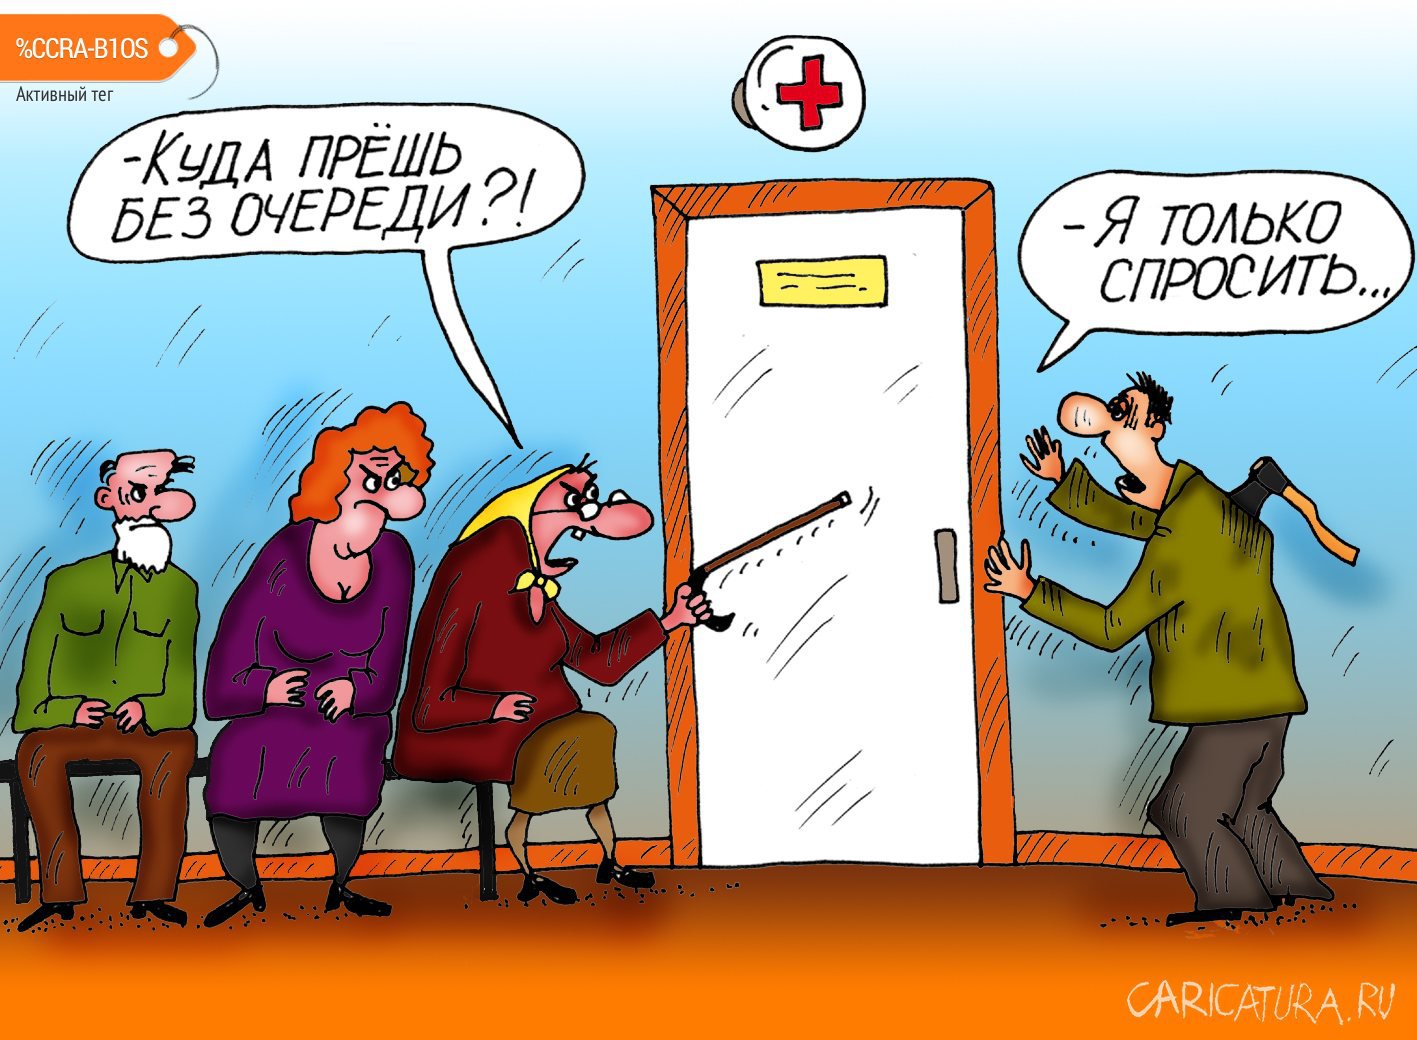 Карикатура "Только спросить", Алексей Булатов